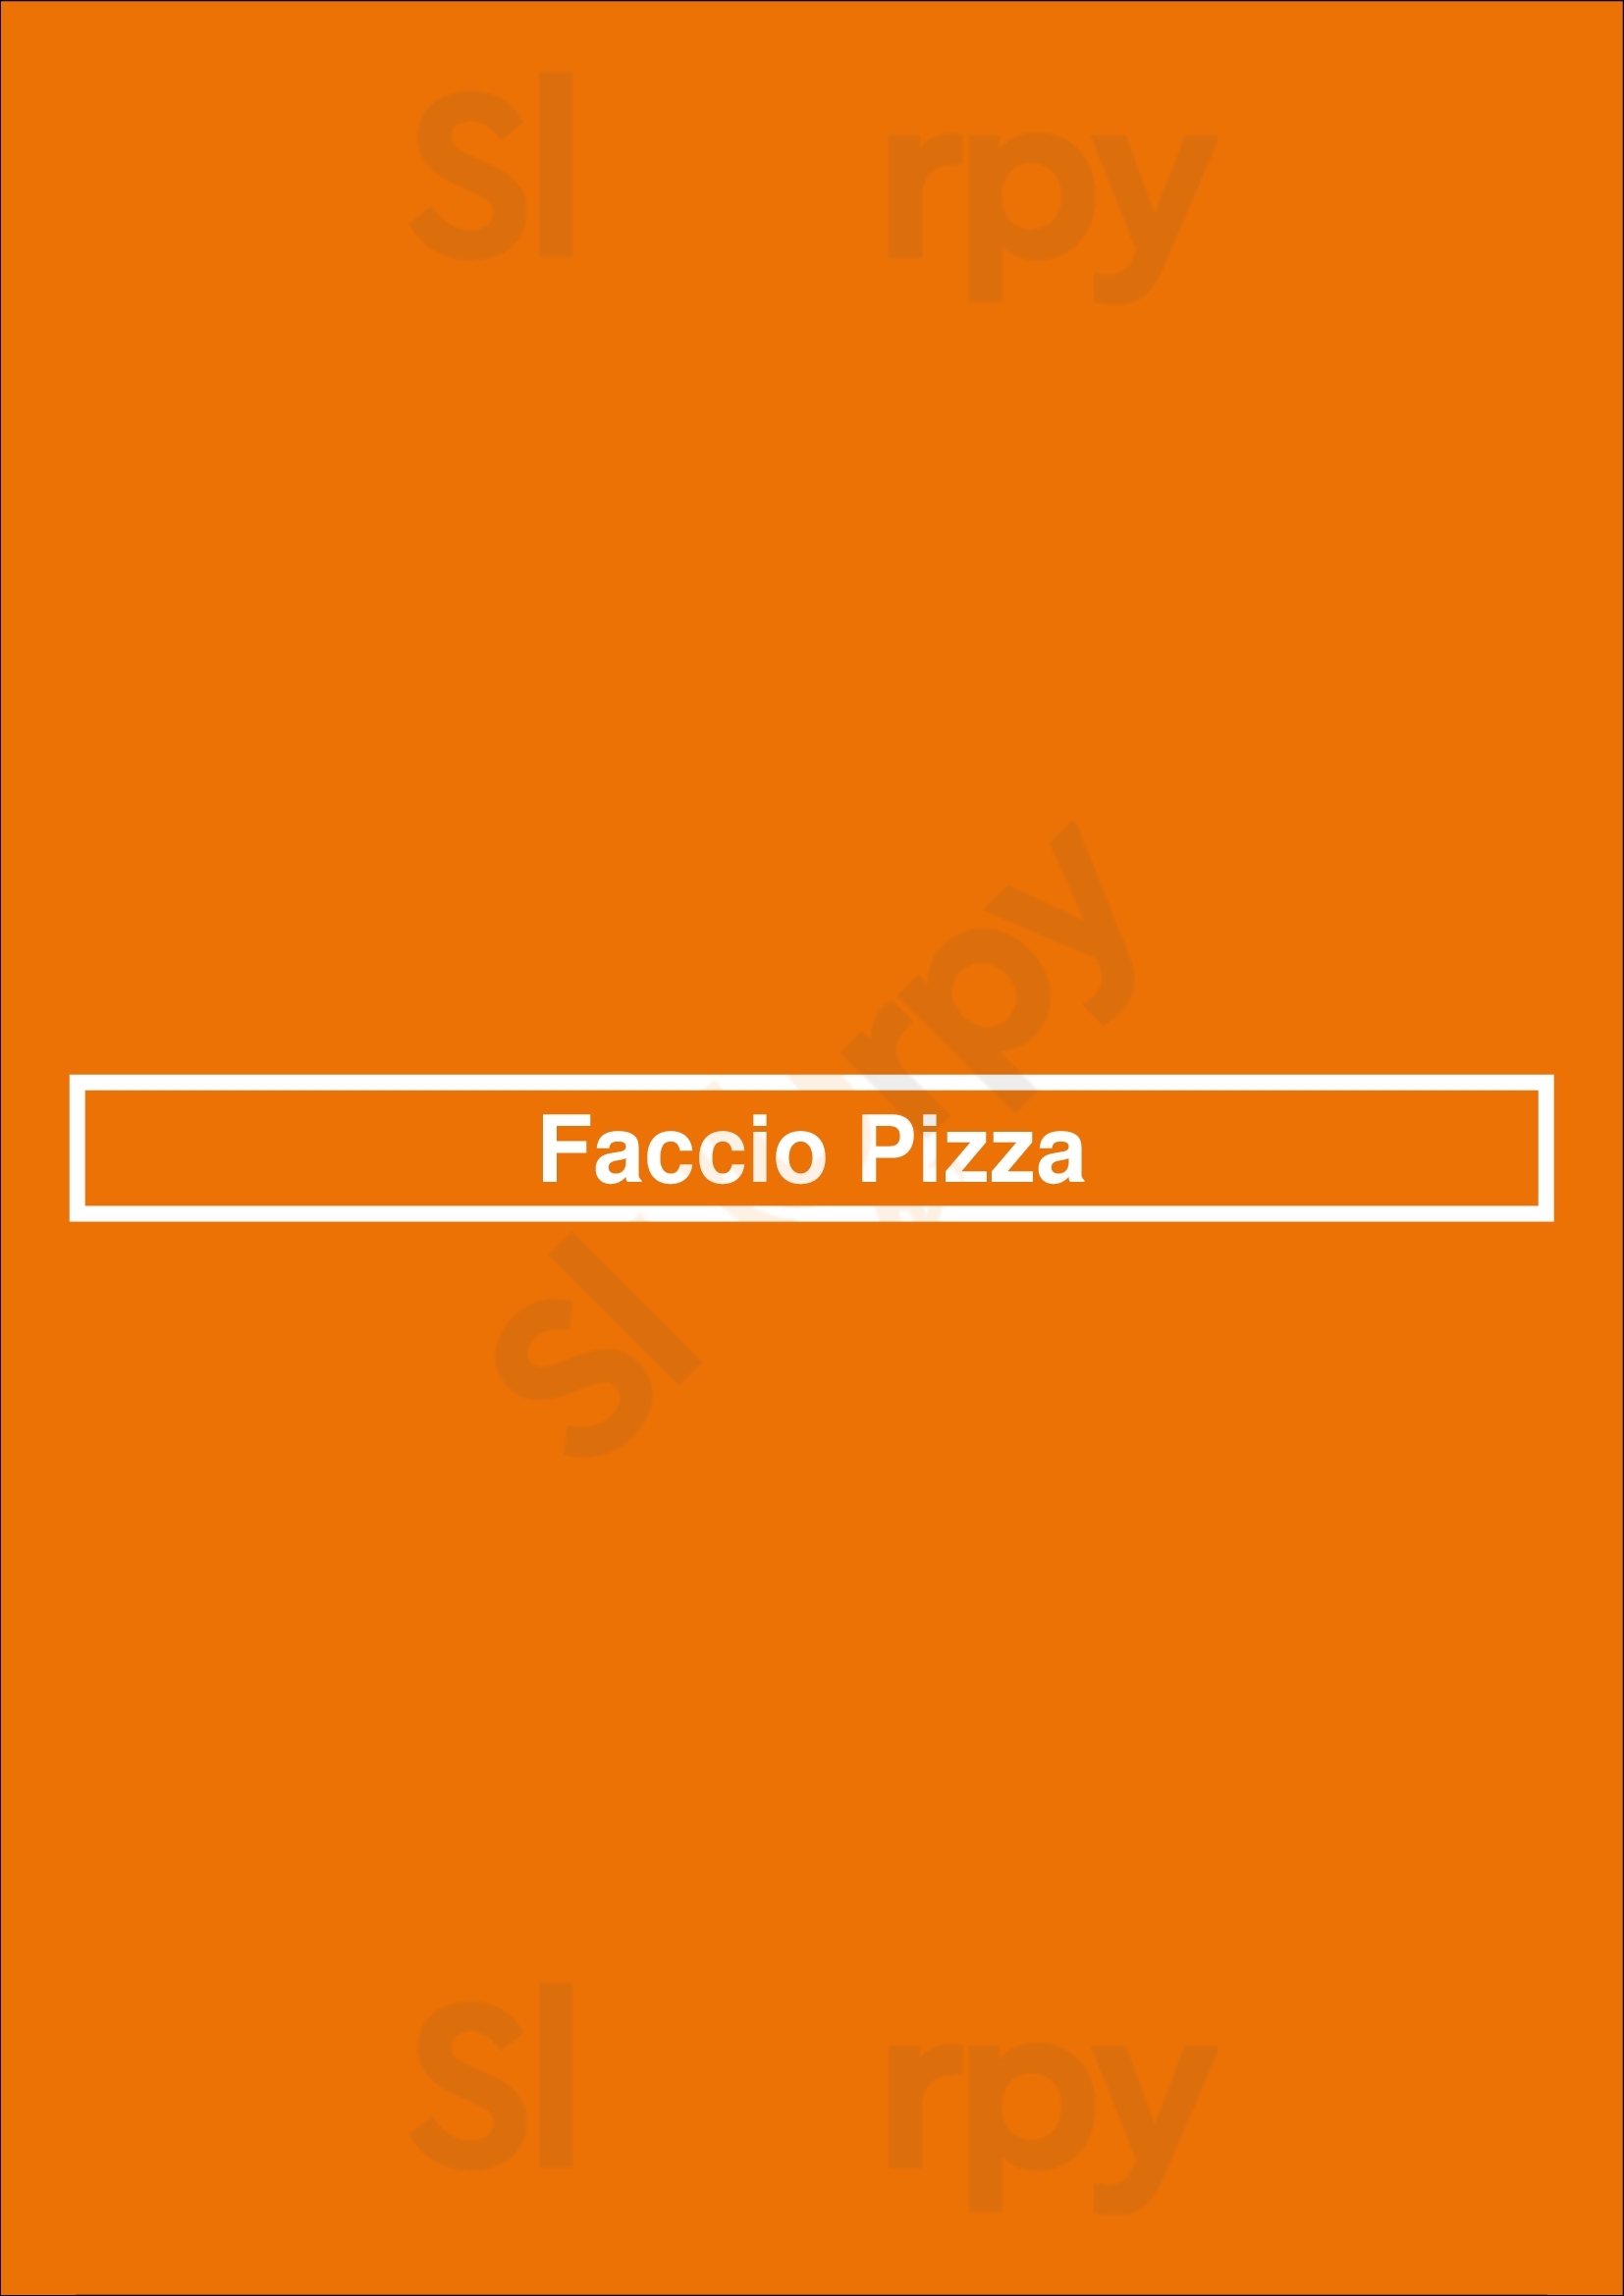 Faccio Pizza Isla Verde Menu - 1